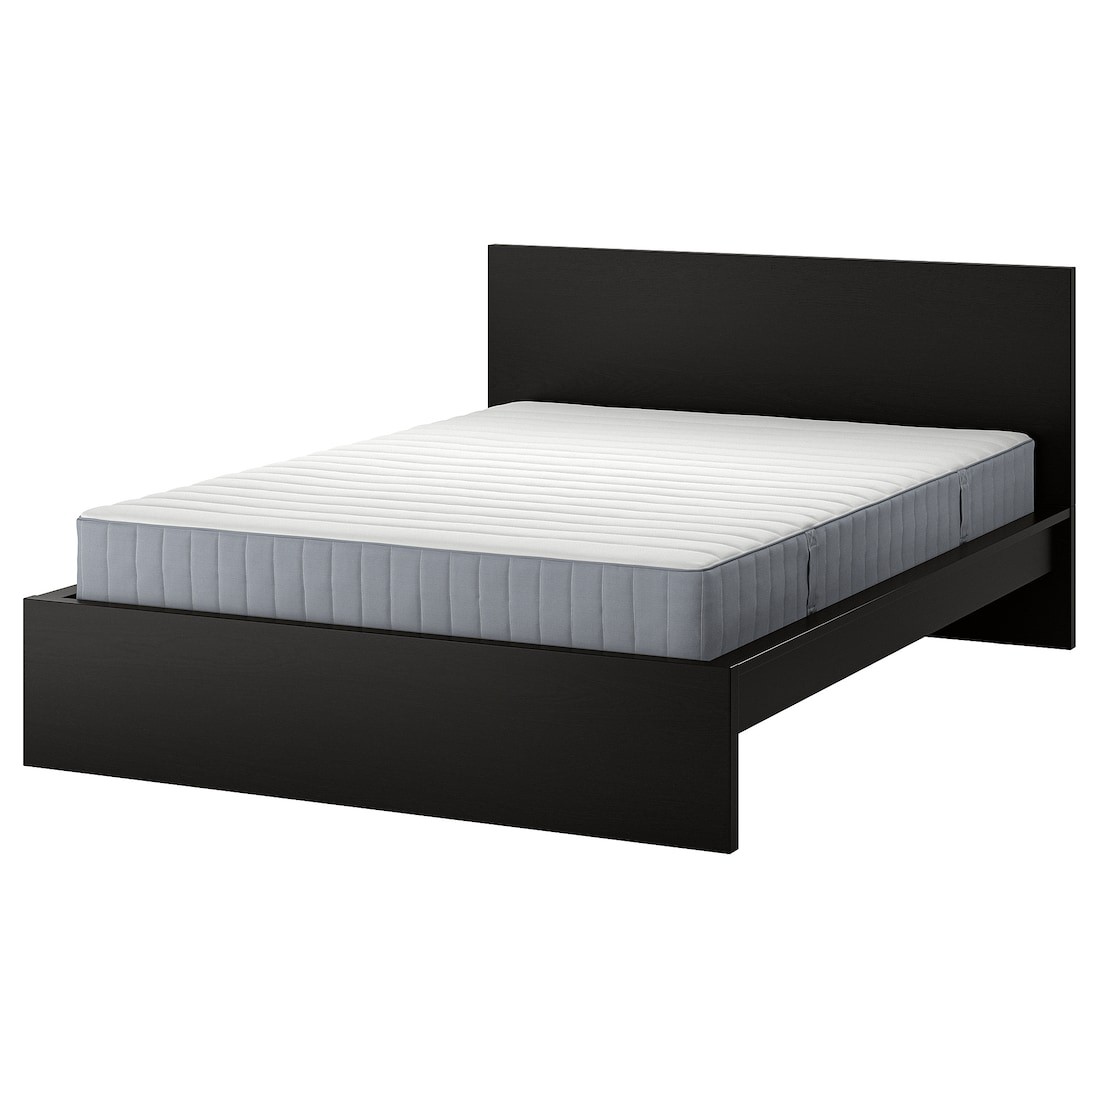 MALM Кровать с матрасом, черно-коричневый / Valevåg средней жесткости, 160x200 см